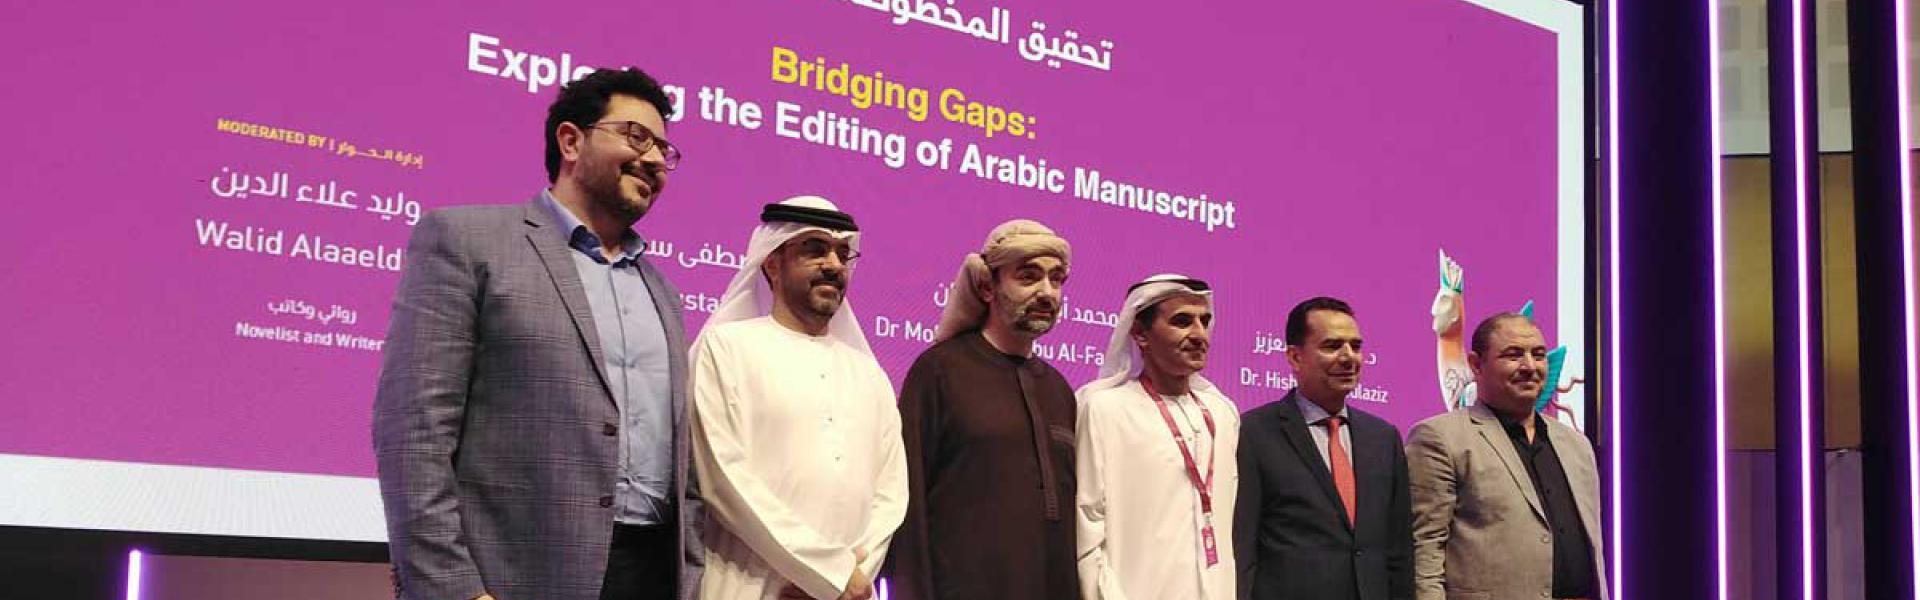 معرض أبوظبي الدولي للكتاب